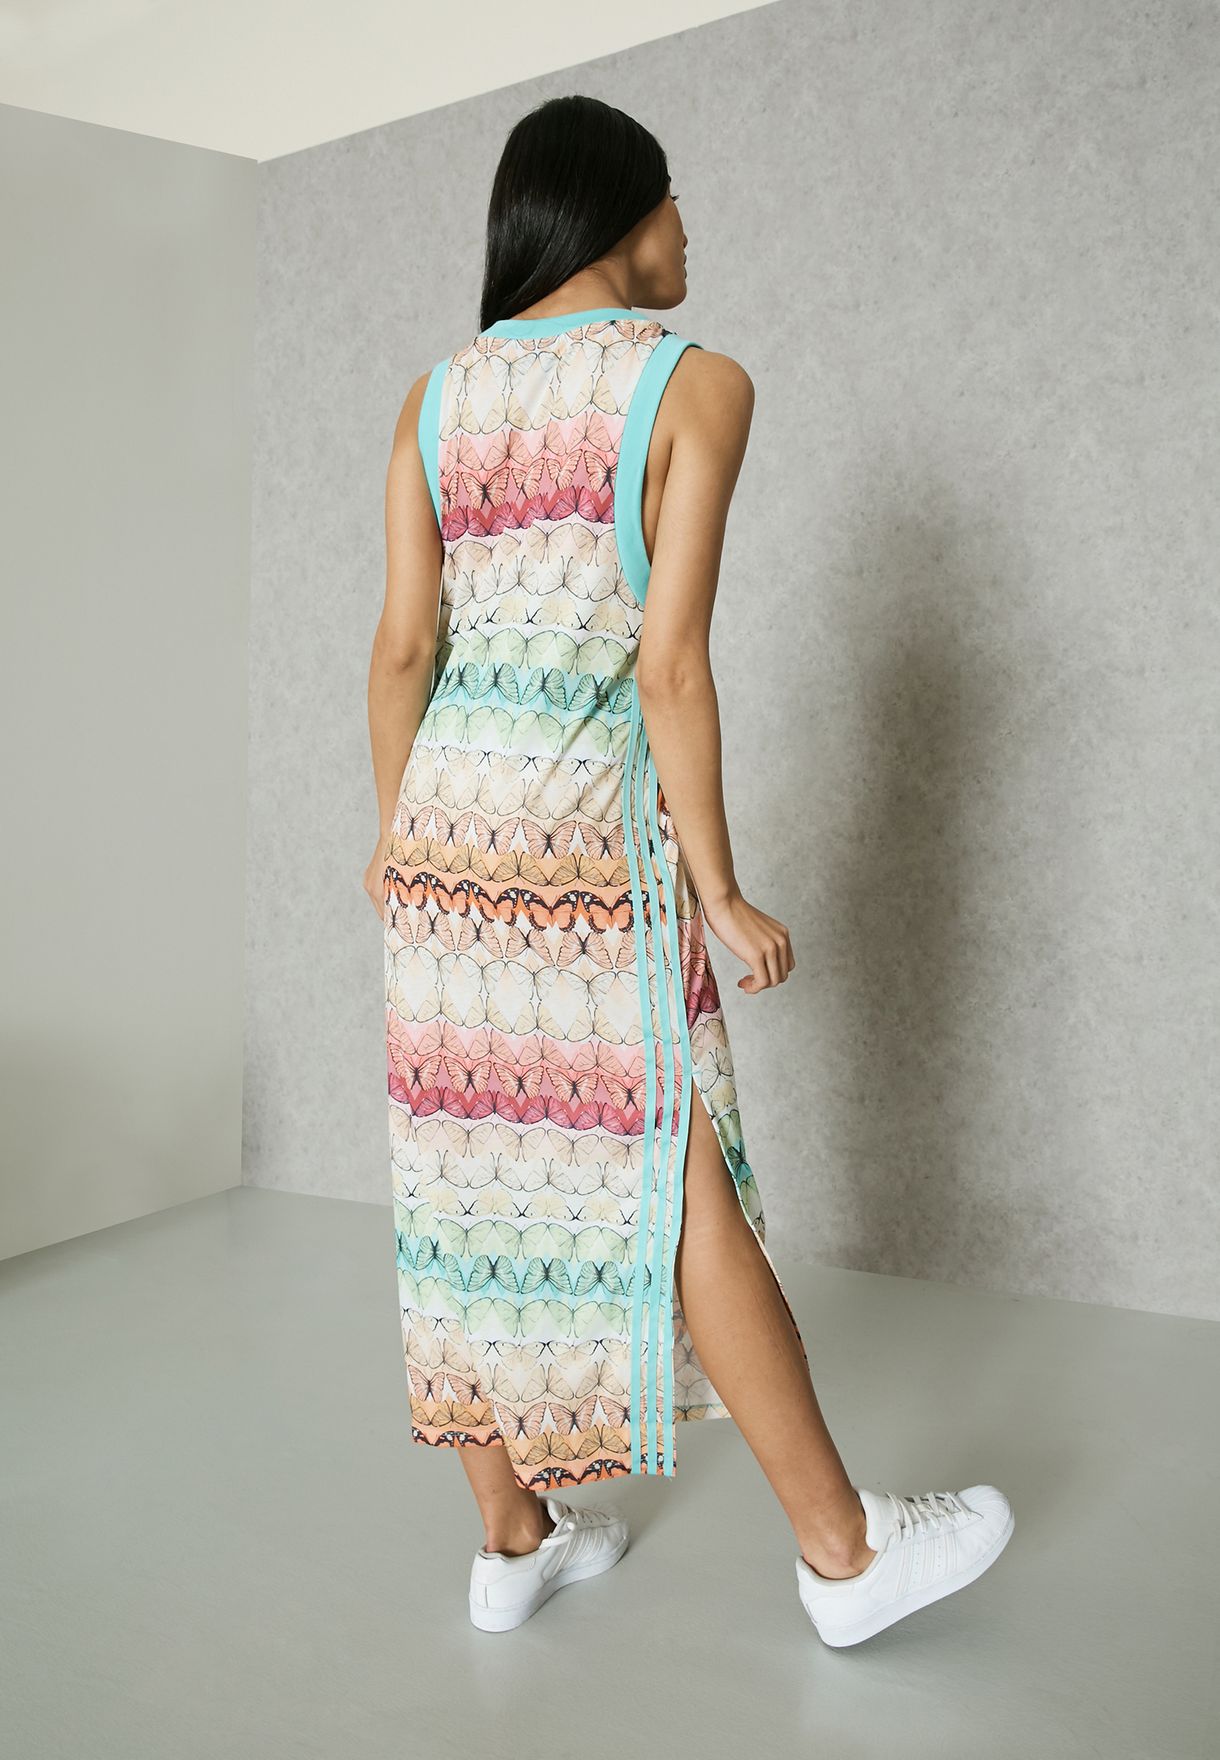 Colaborar con joyería lo hizo Buy adidas Originals prints Borbofresh Tank Dress for Women in MENA,  Worldwide